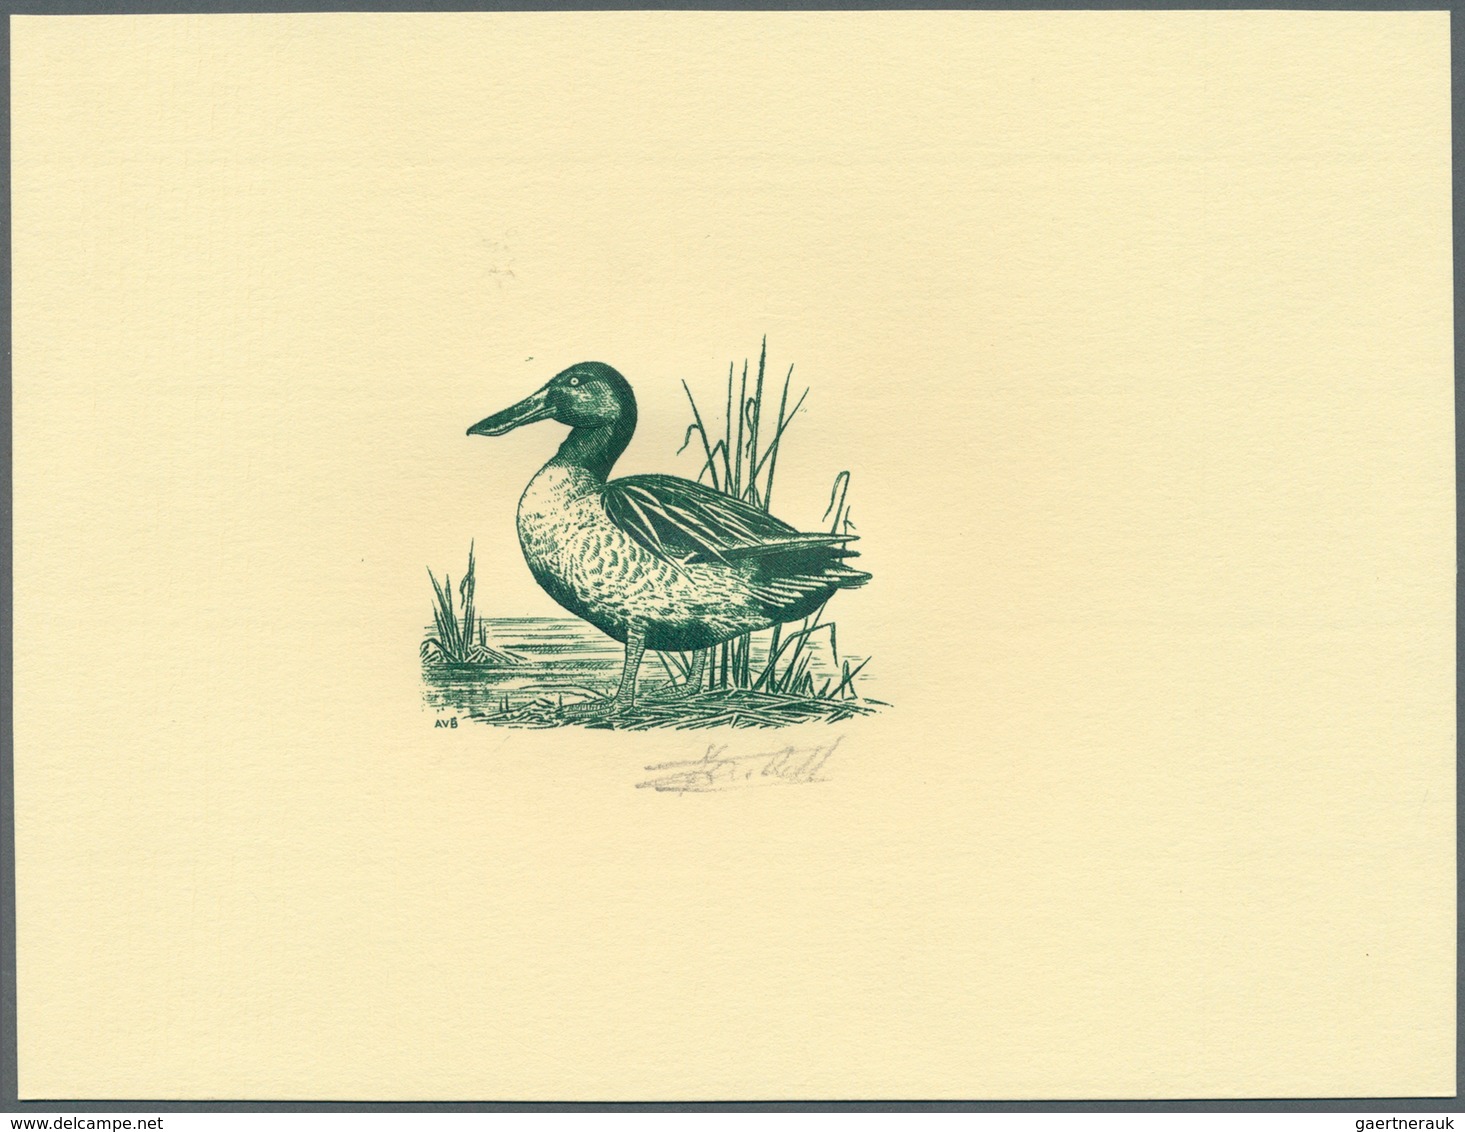 Thematik: Tiere-Wasservögel / animals-water birds: 1989, Belgium. Set of 4 Epreuves d'artiste in gre